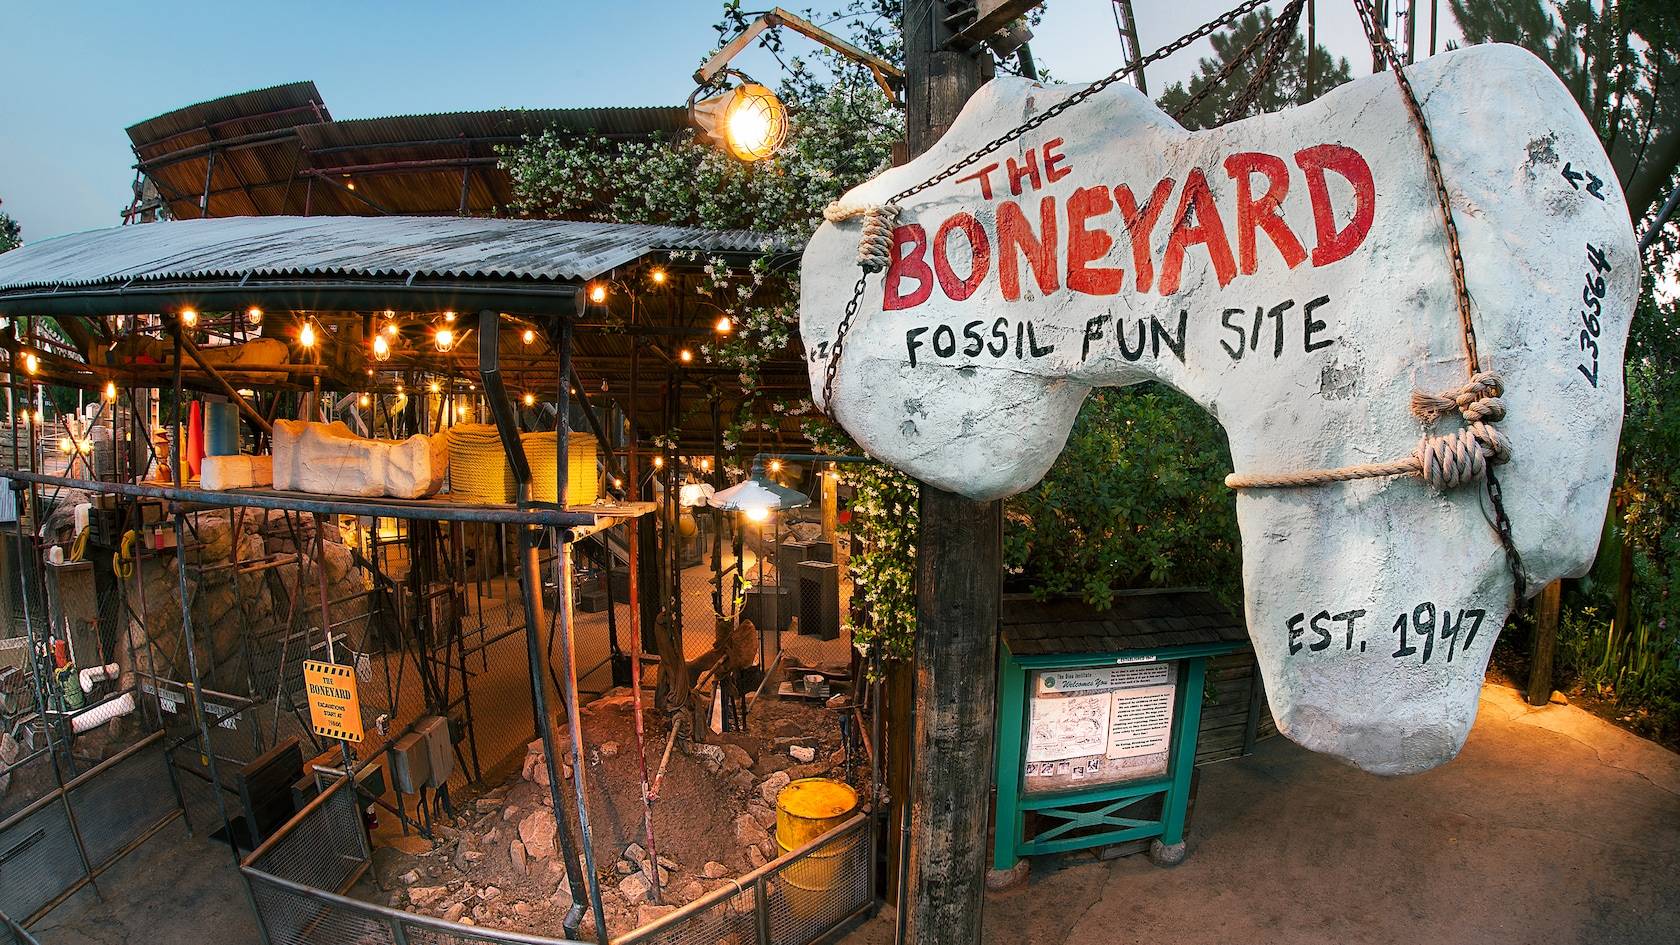 The Boneyard at Disney's Animal Kingdom closing for refurbishment